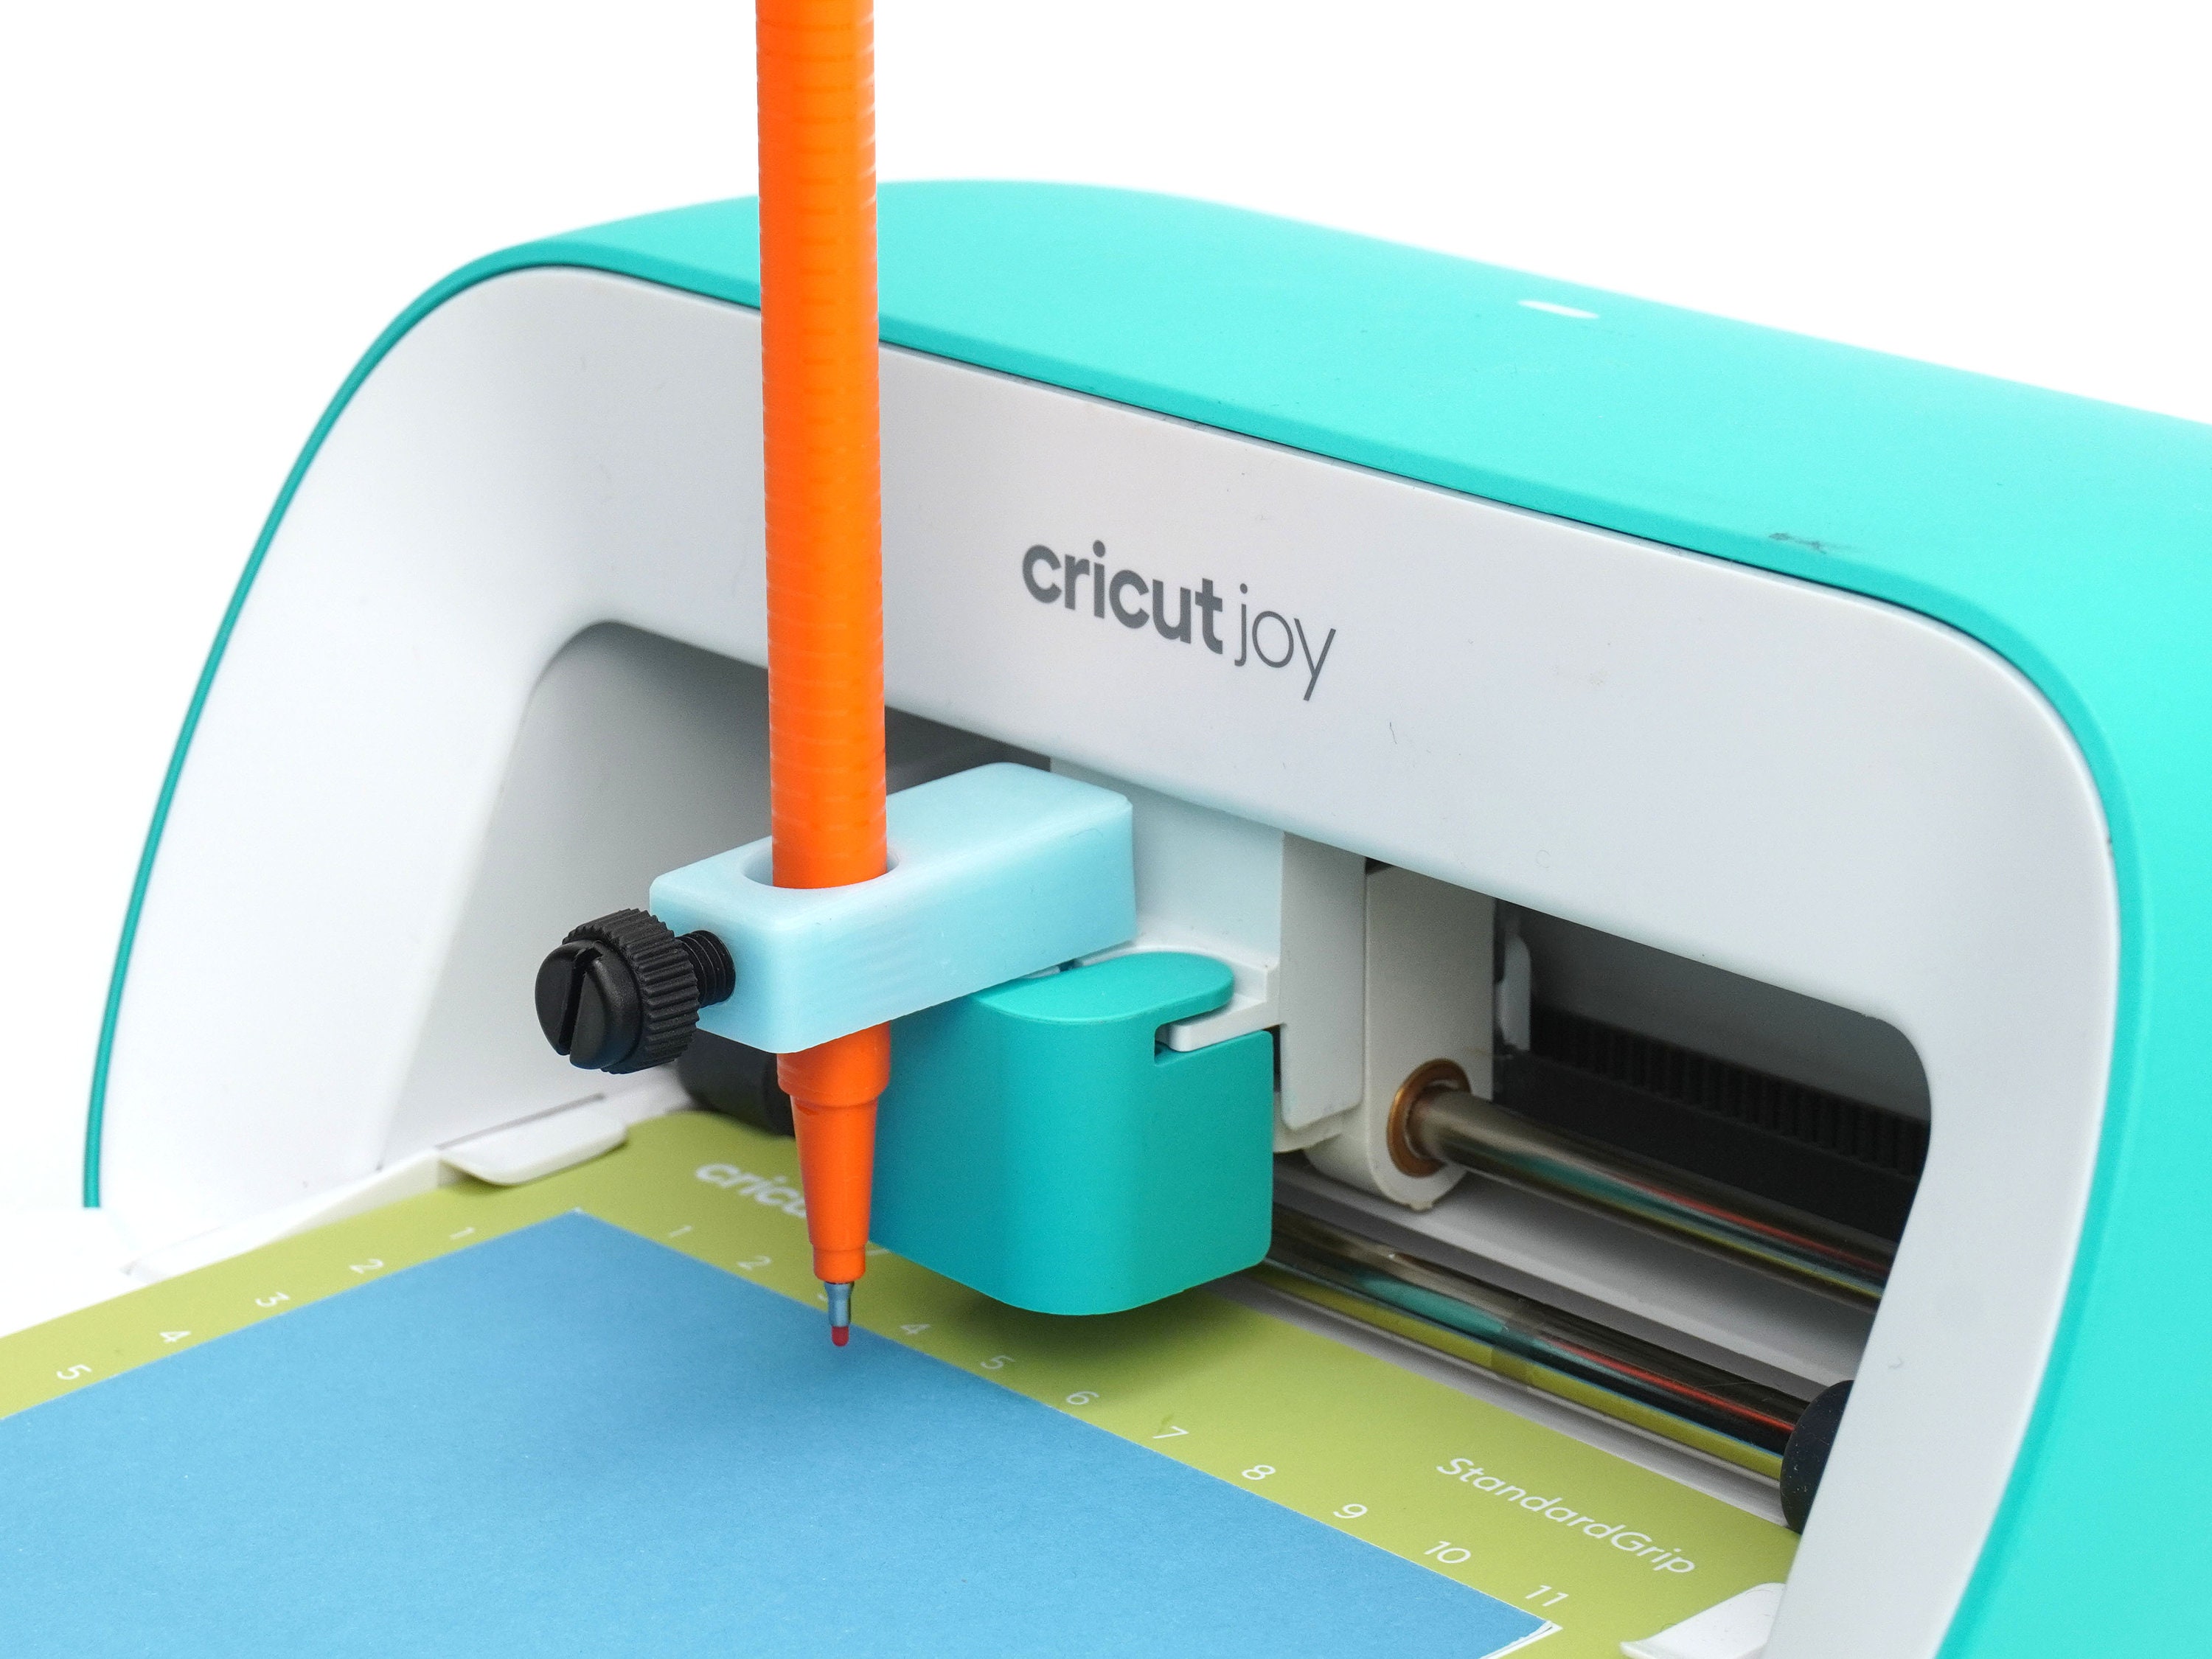 Cricut Accessories Mat Organizer and Cutting Mat Holder for Craft